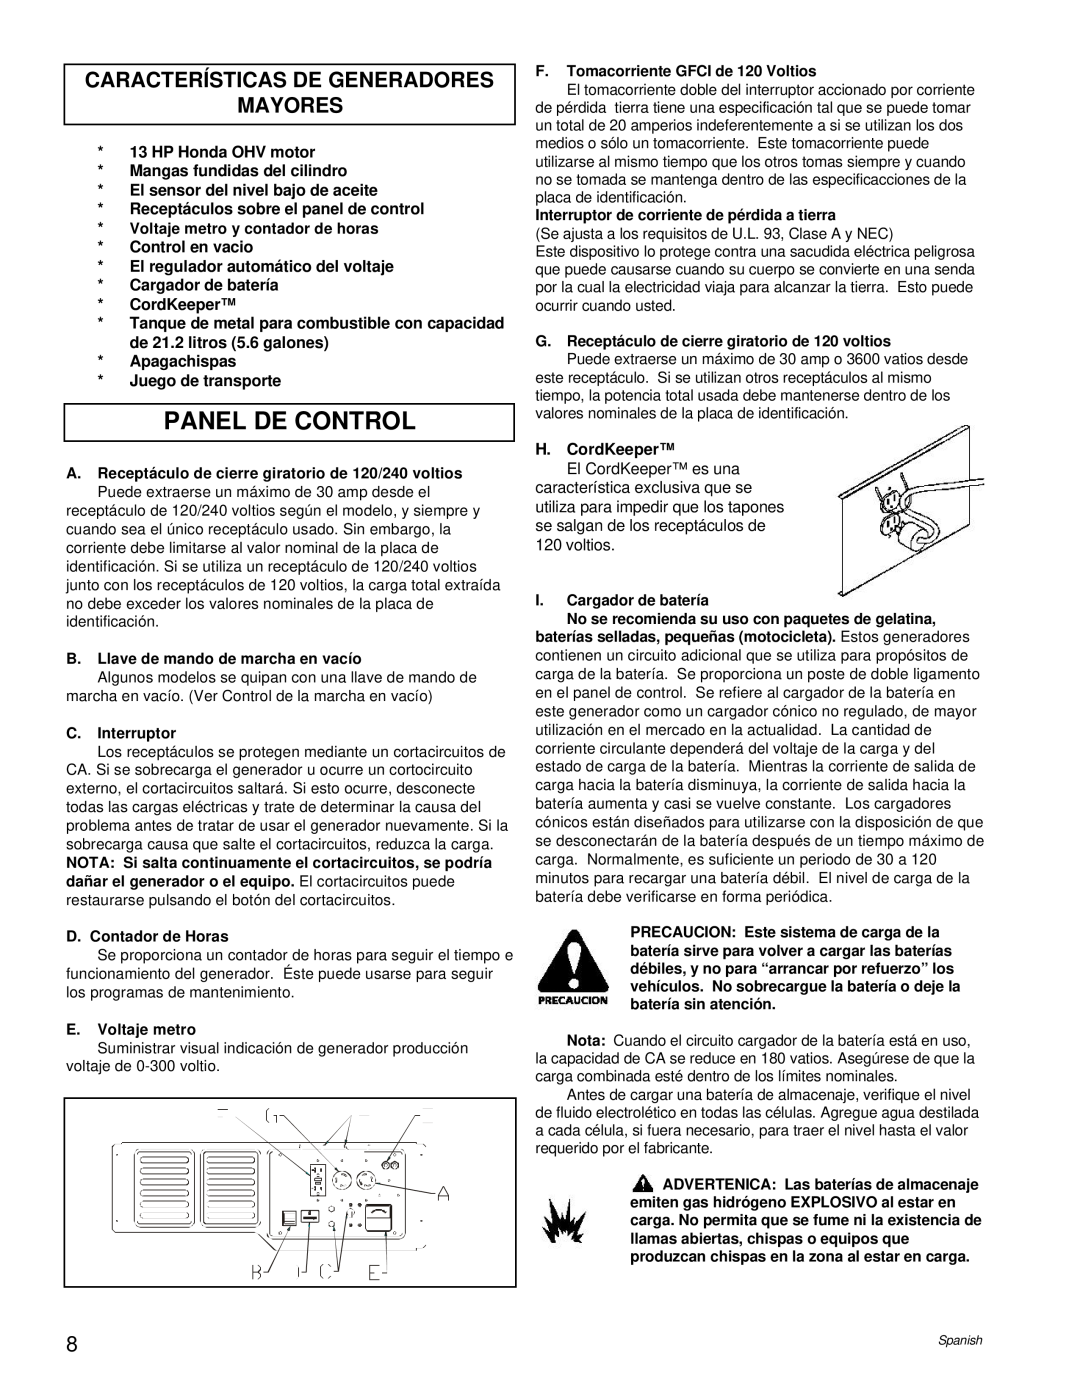 Powermate PL0496504.17 manual Panel De Control, Características De Generadores Mayores 